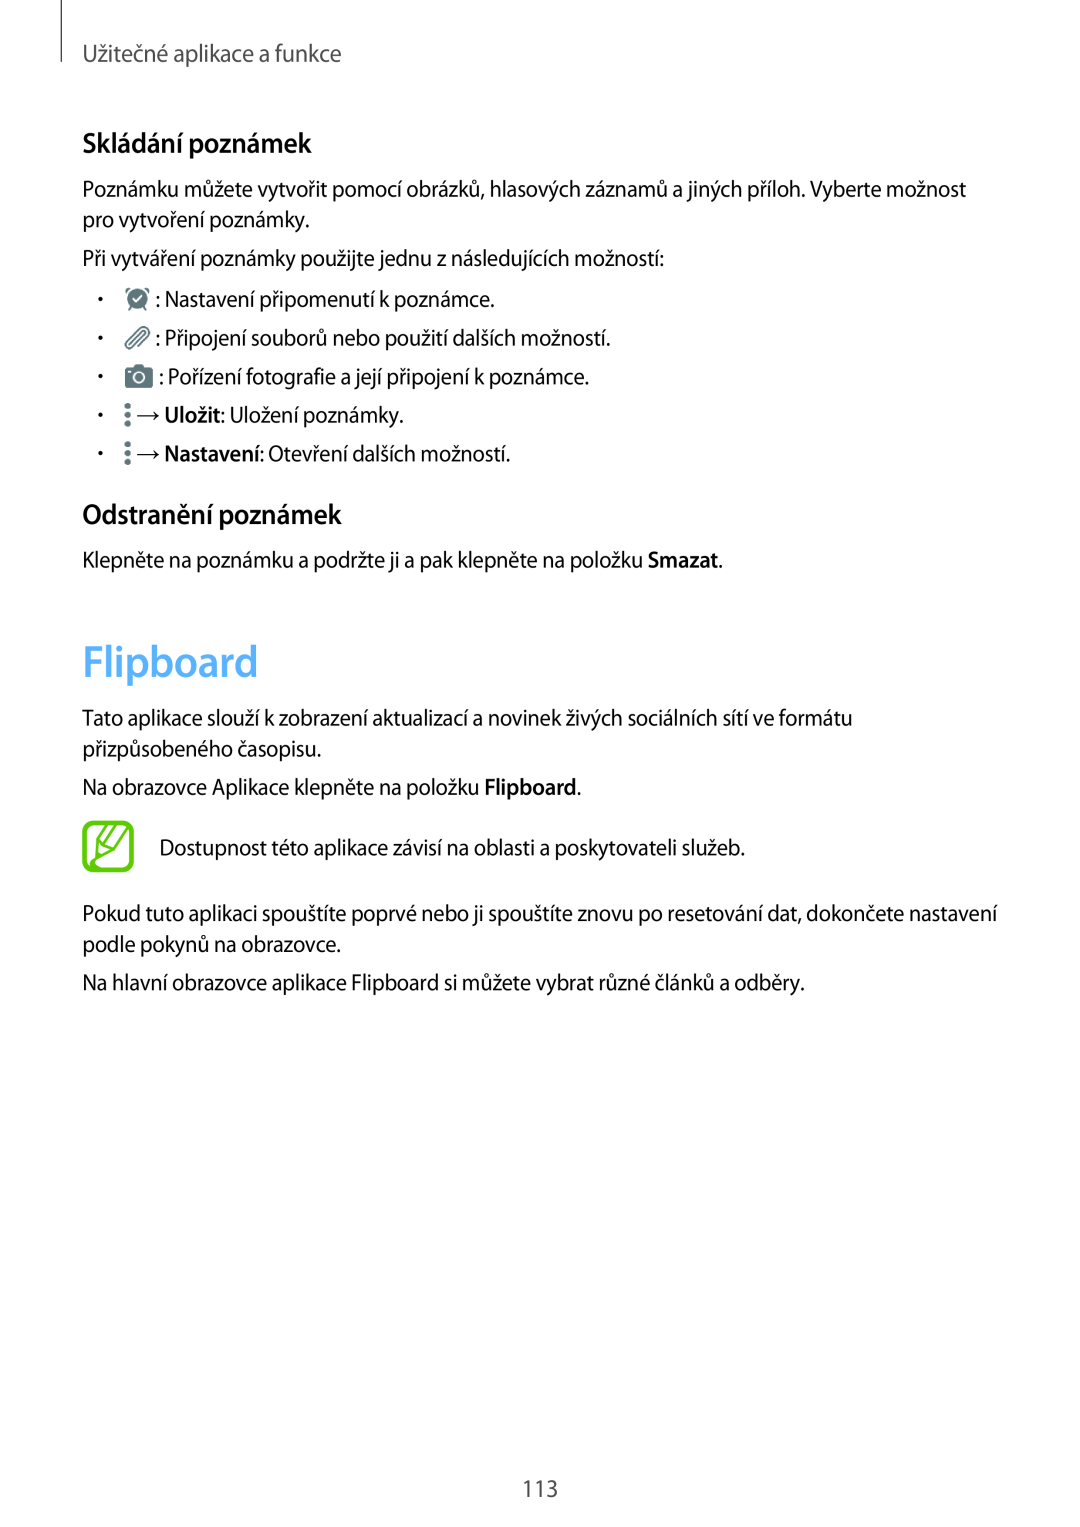 Samsung SM-T805NZWAATO, SM-T805NZWAXEO manual Flipboard, Skládání poznámek, Odstranění poznámek, Užitečné aplikace a funkce 